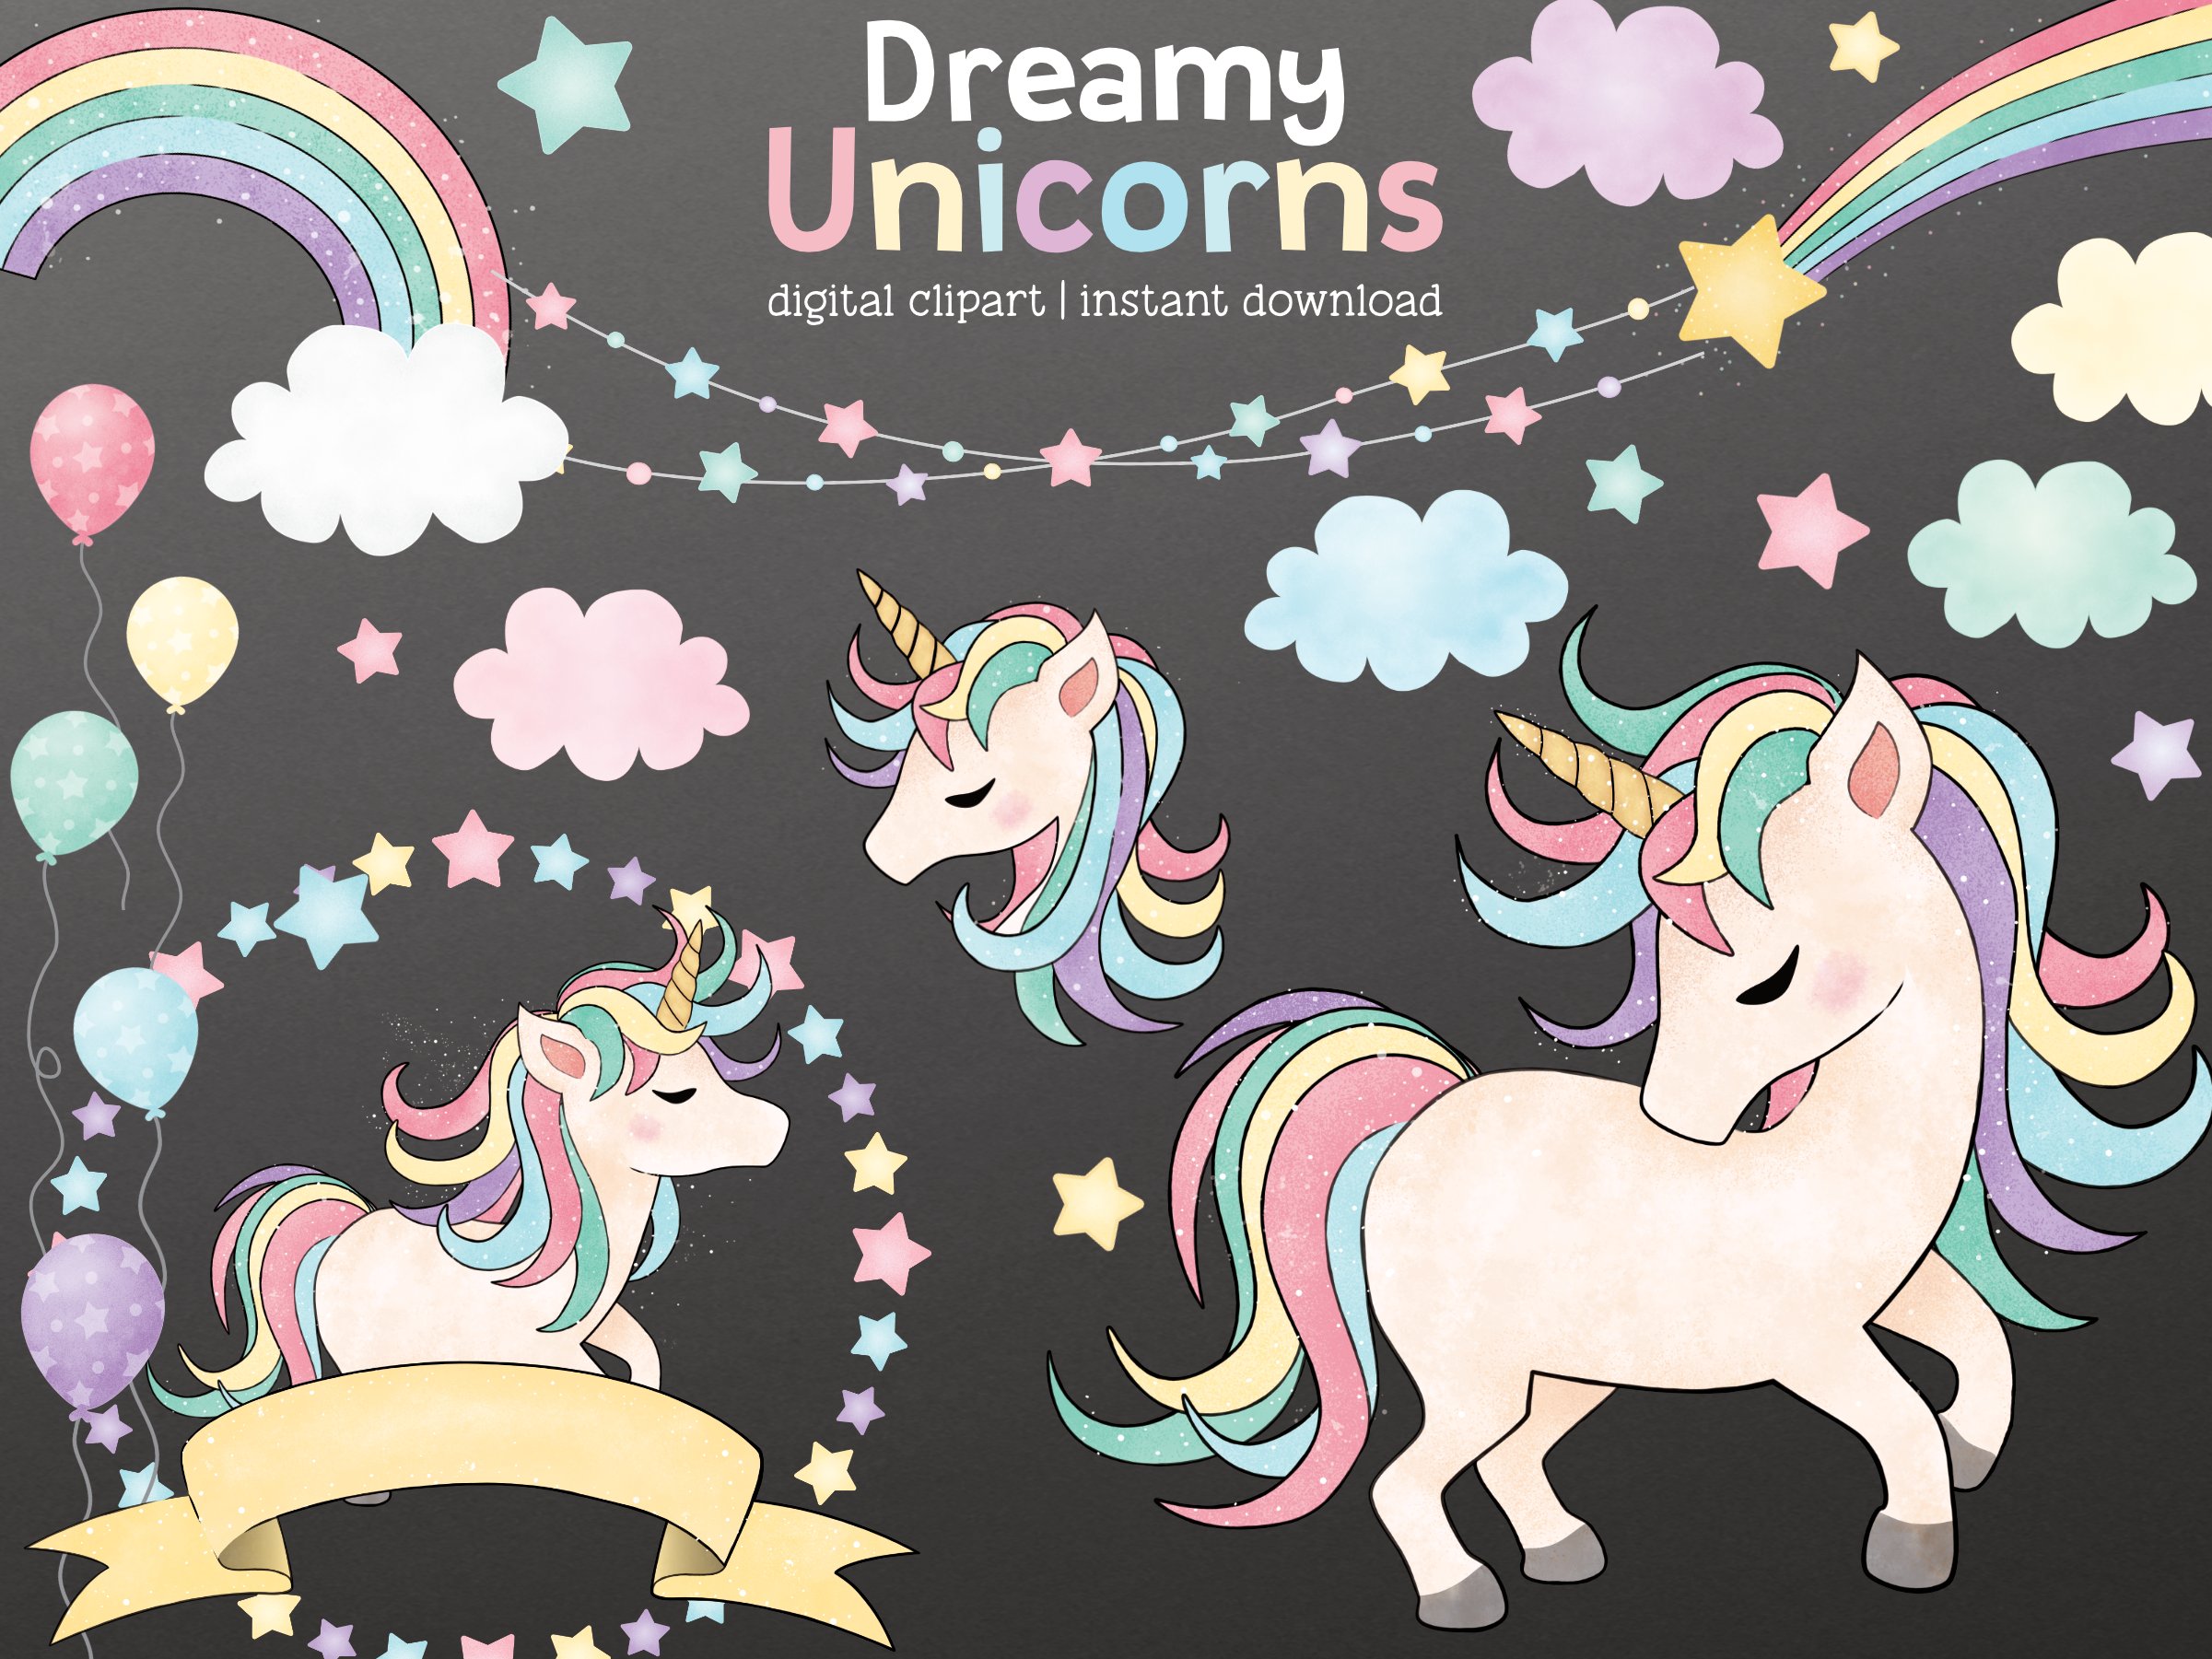 Dreamy Unicorn Cliparts cover image.